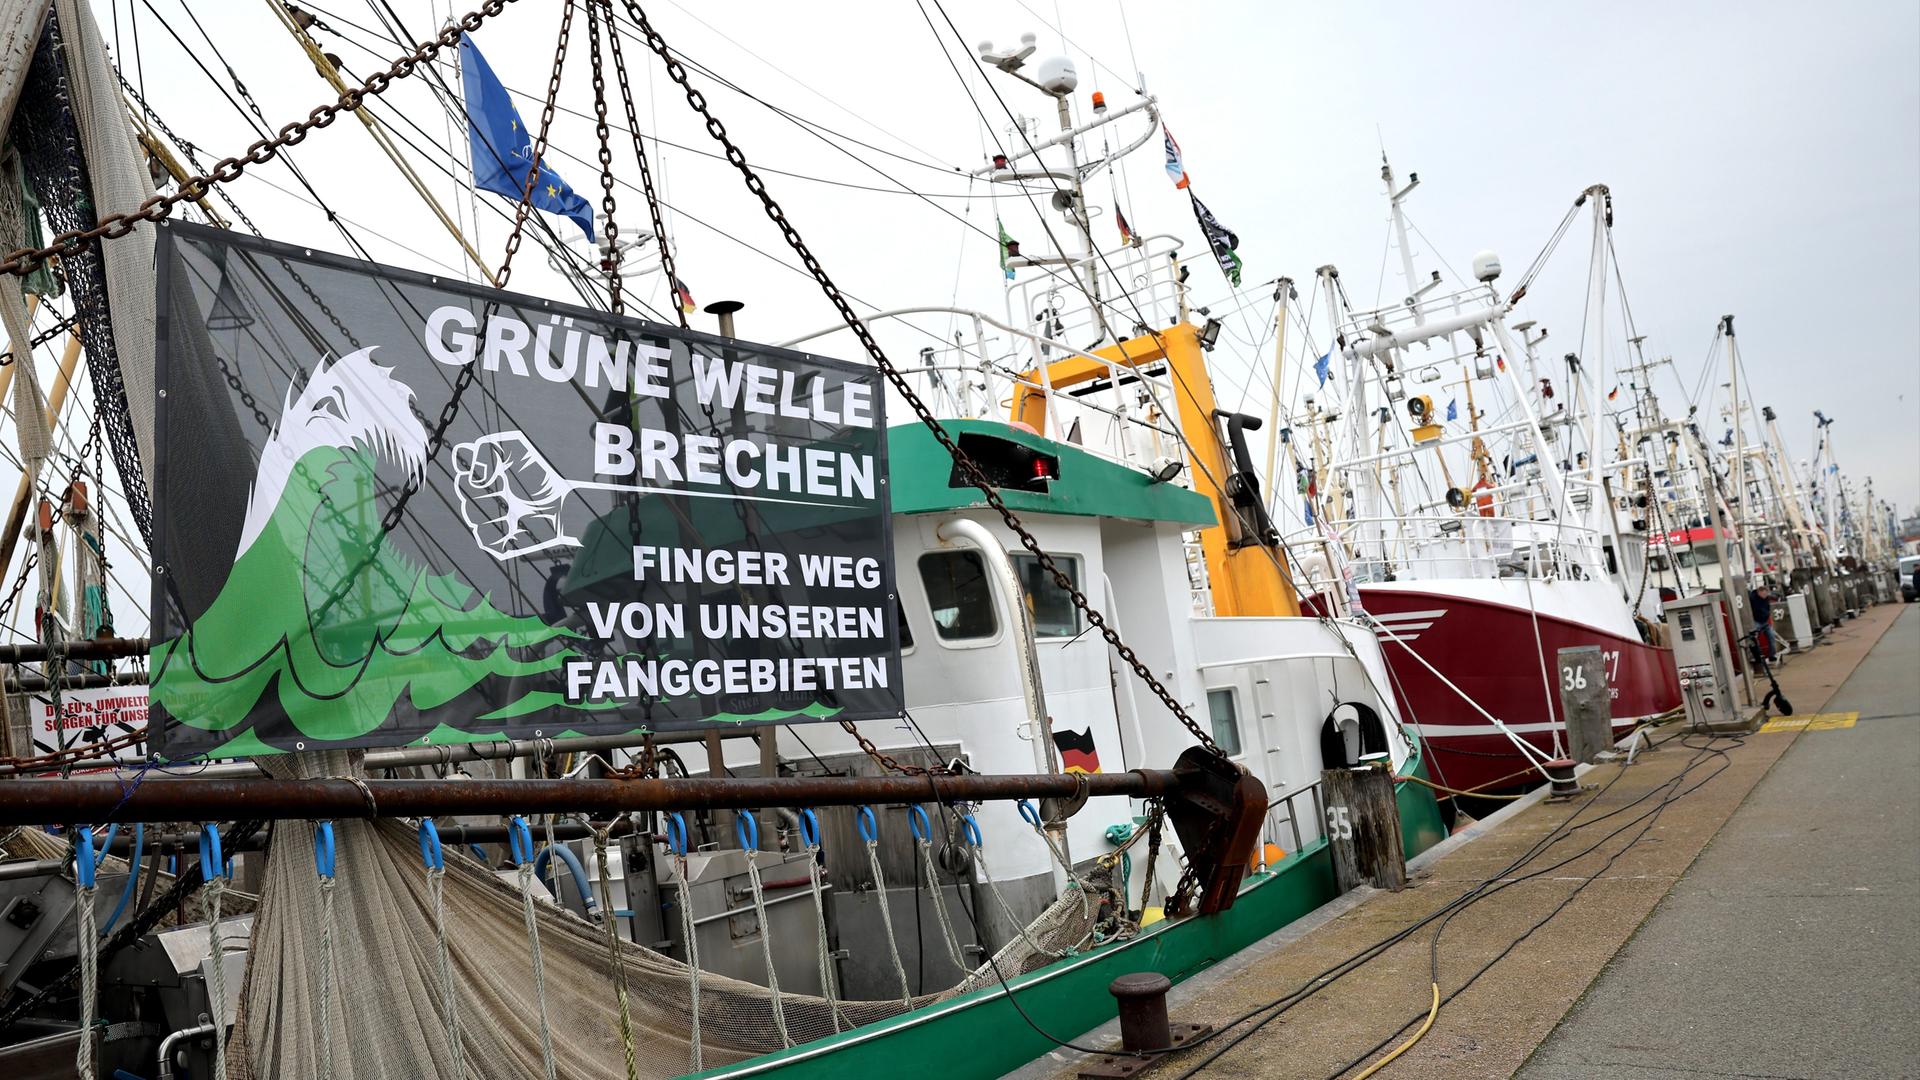 Ein Protestbanner mit dem Text "Grüne Welle brechen - Finger weg von unseren Fanggründen" ist an einem Kutter im Hafen von Büsum zu sehen.